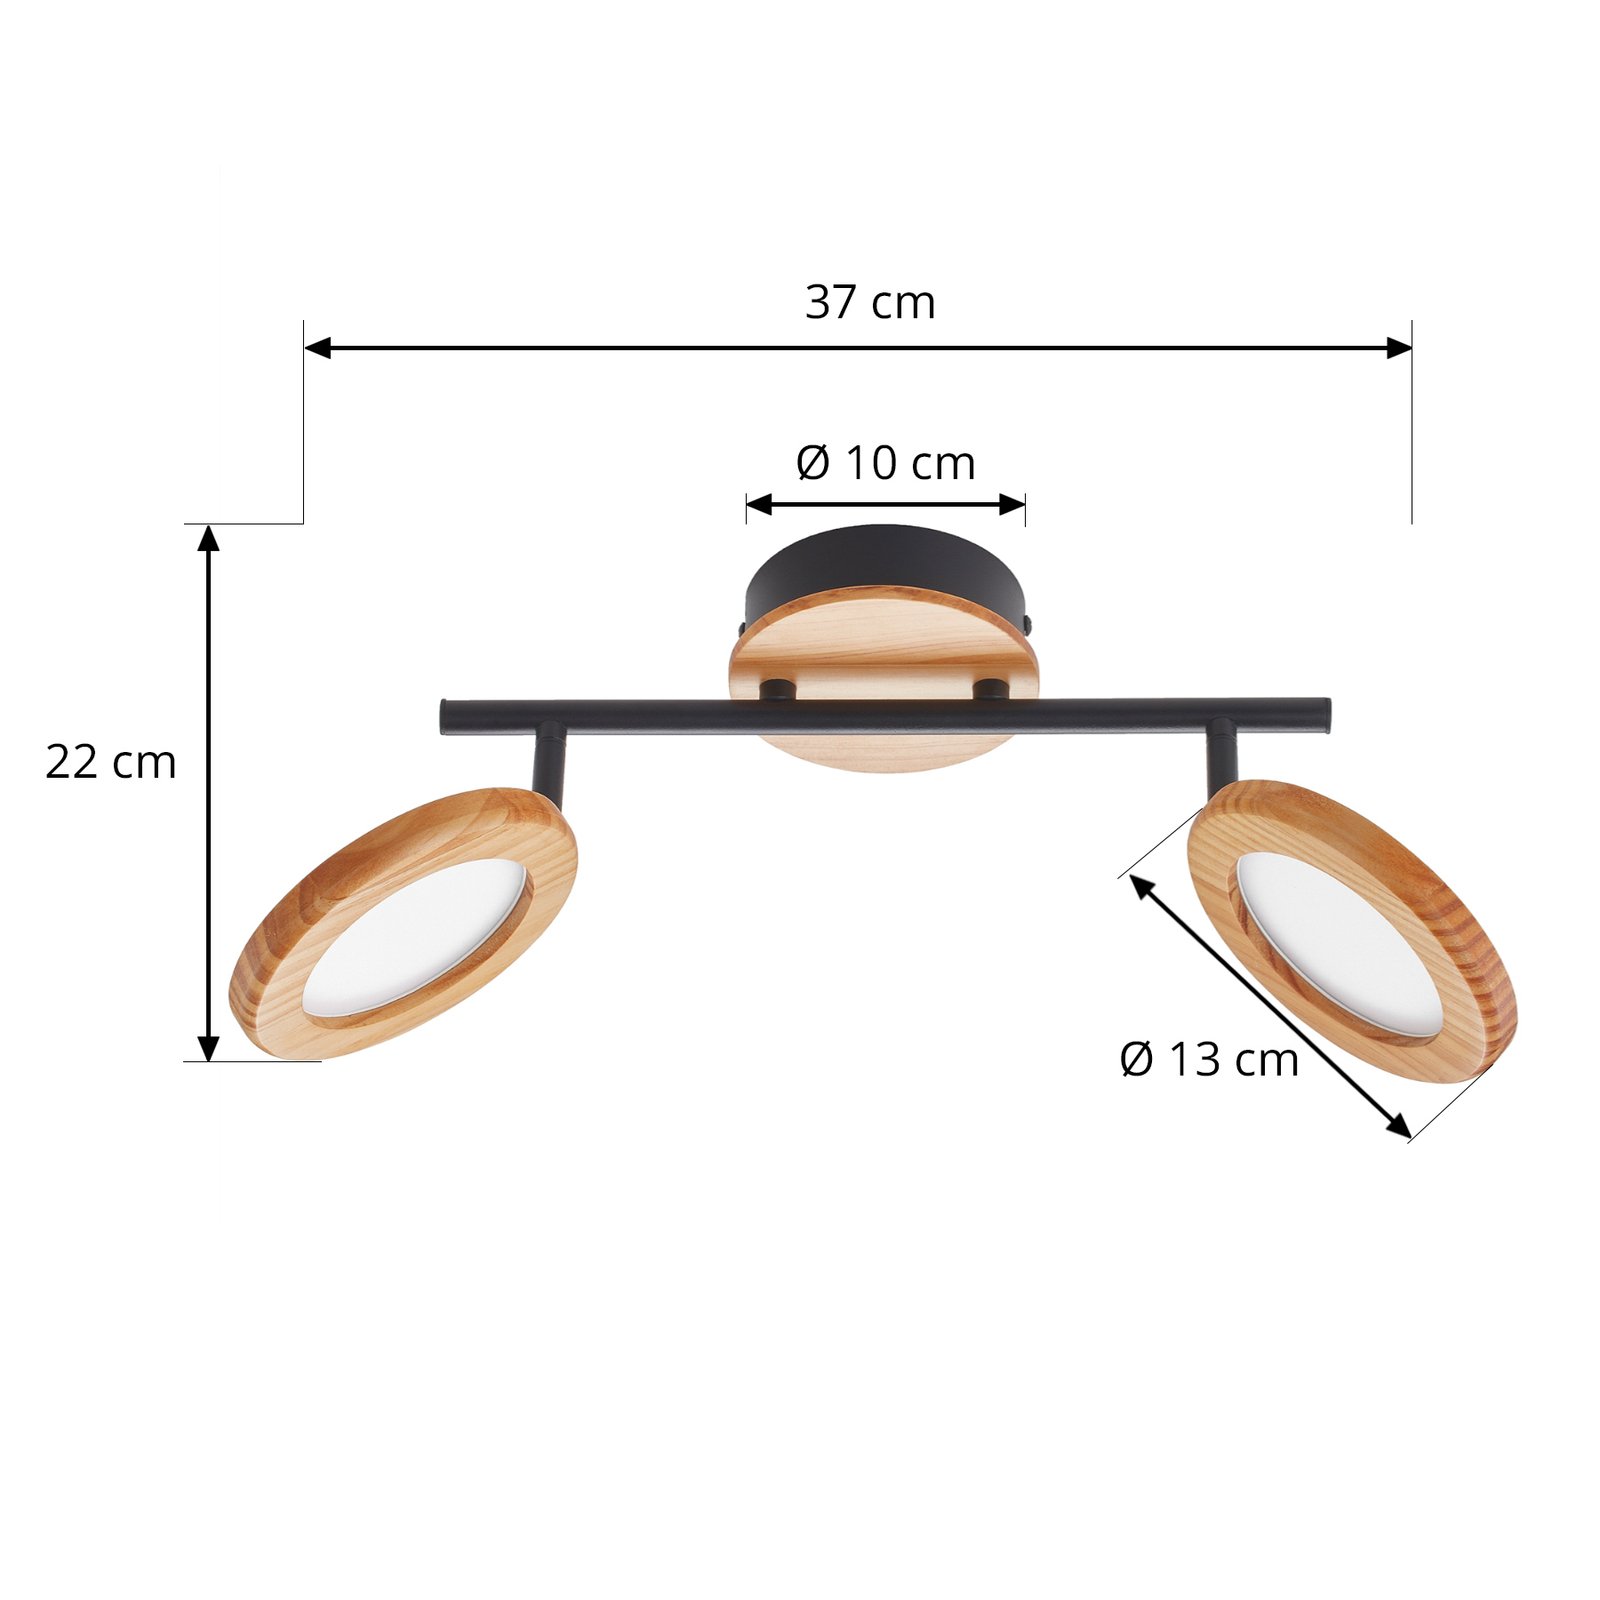 Reflektor LED Manel, drewno, 37 cm długości, 2-punktowy